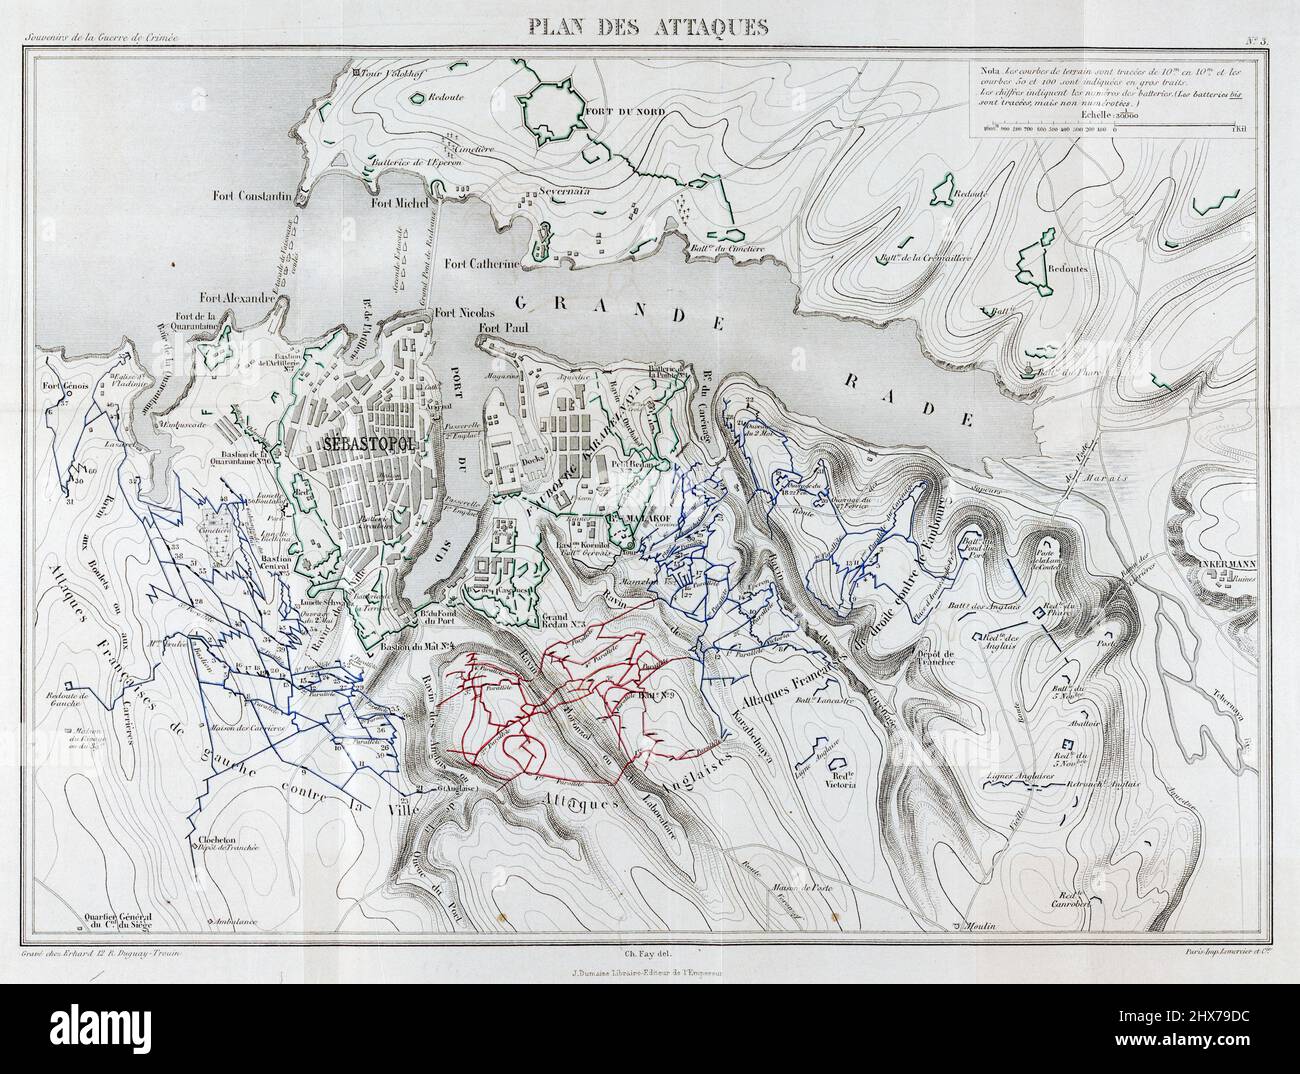 Vintage map 1867 - Plan des attaques von Charles Alexandre Fay, 1827-1903 - Krimkrieg, 1853-1856 - Sevastopolʹ (Ukraine)-1850-1860 Stockfoto